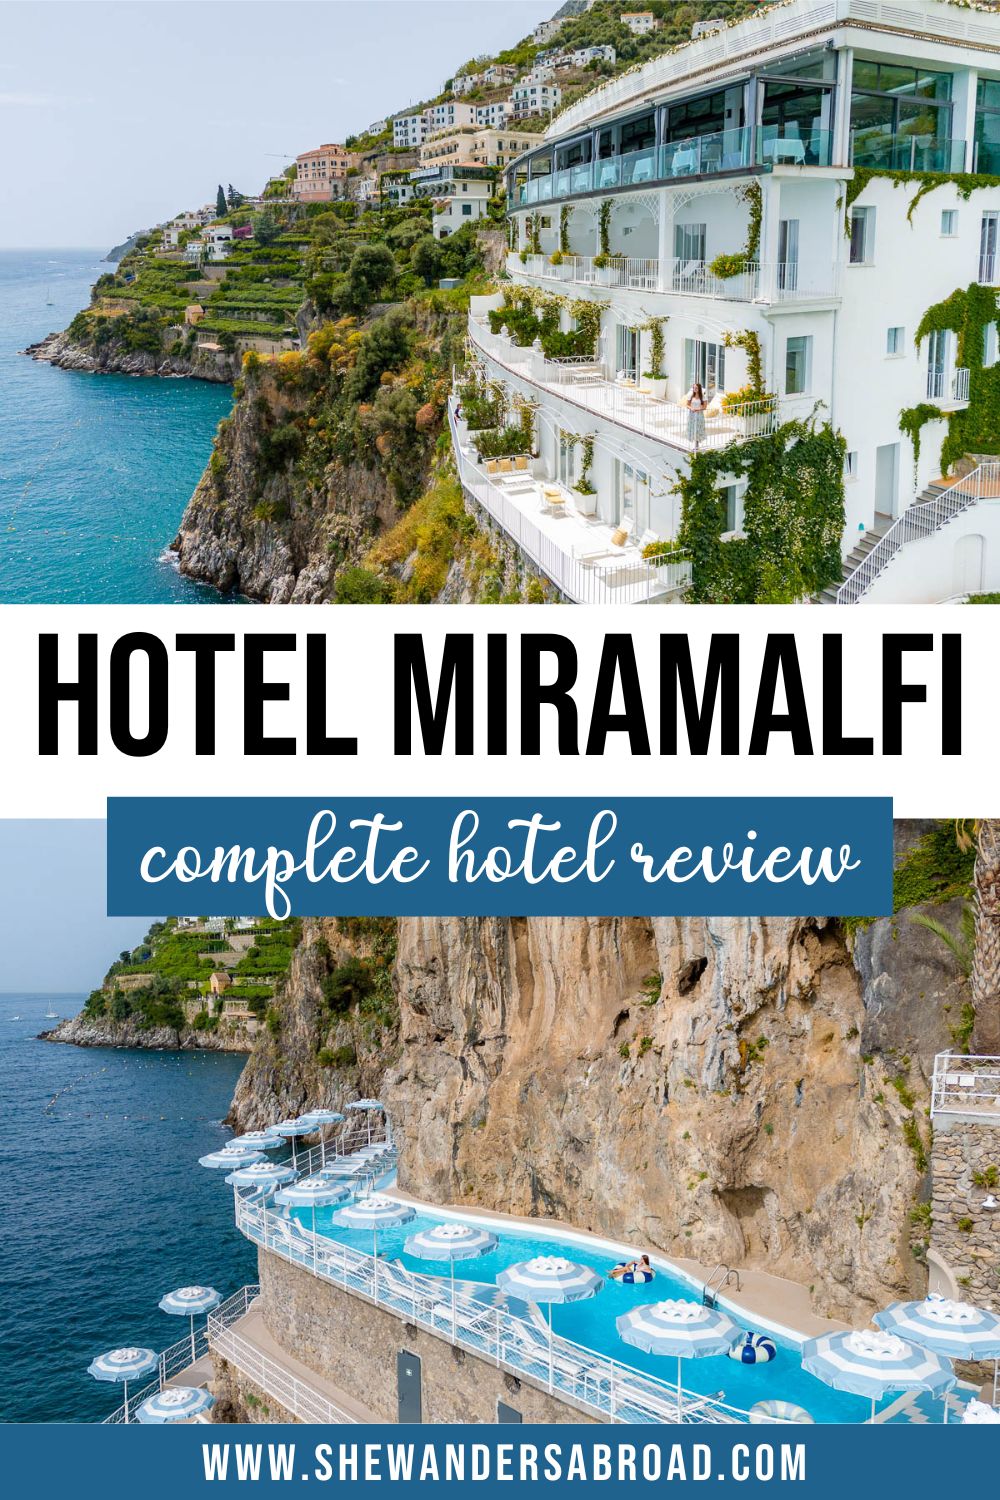 Hotel Review: Hotel Miramalfi, Italy